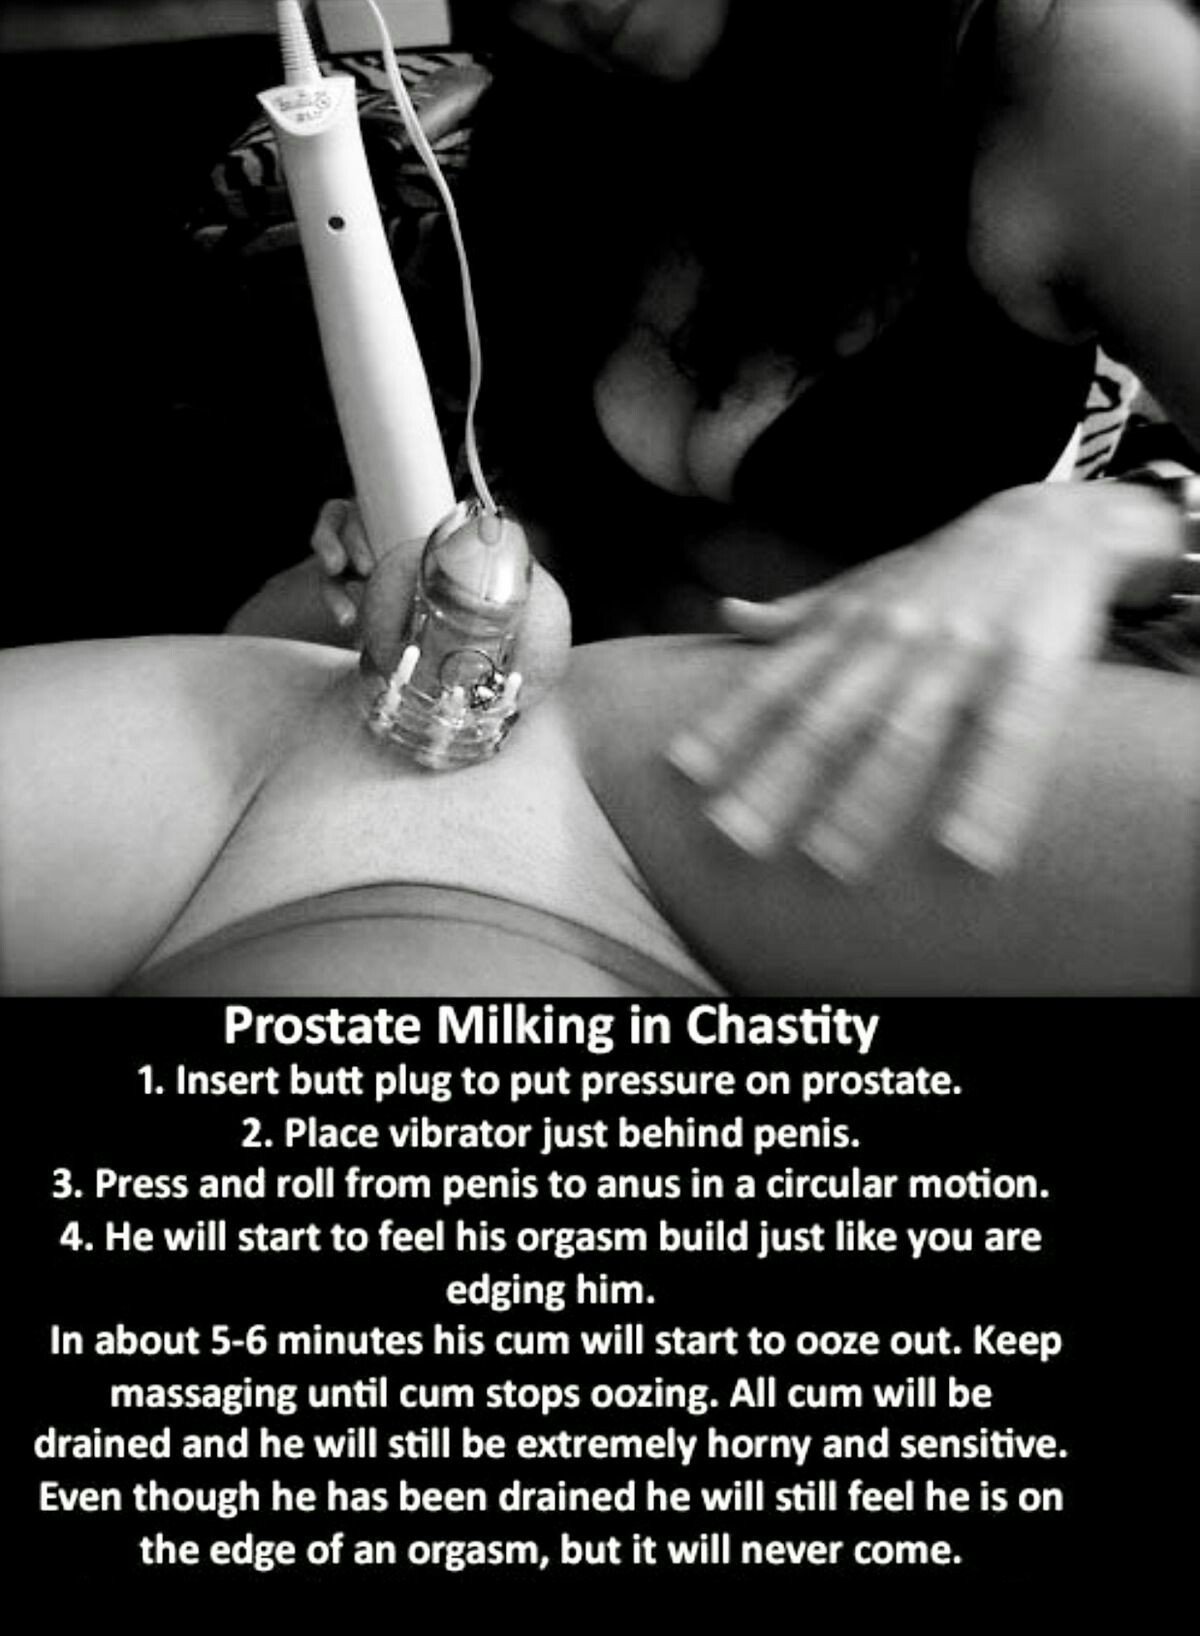 Chastity prostate milking